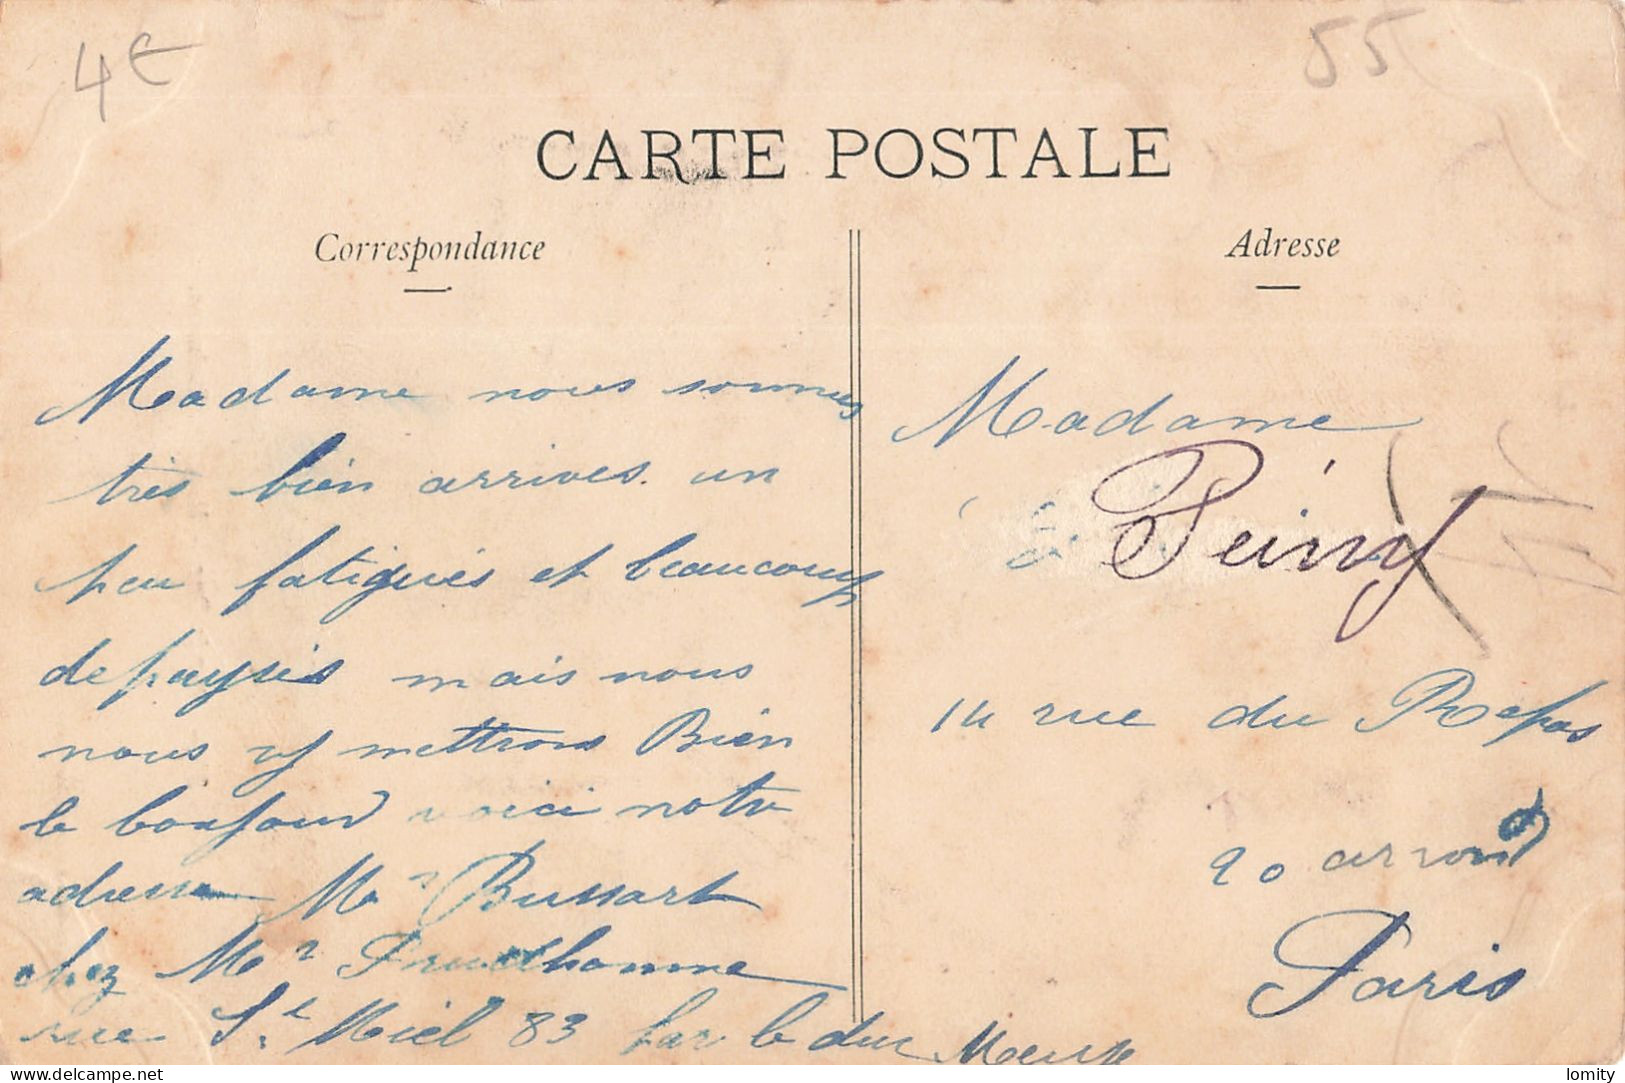 Destockage lot de 21 cartes postales CPA de la Meuse  Commercy Bar le Duc Ligny Barrois Verdun Saint Mihiel